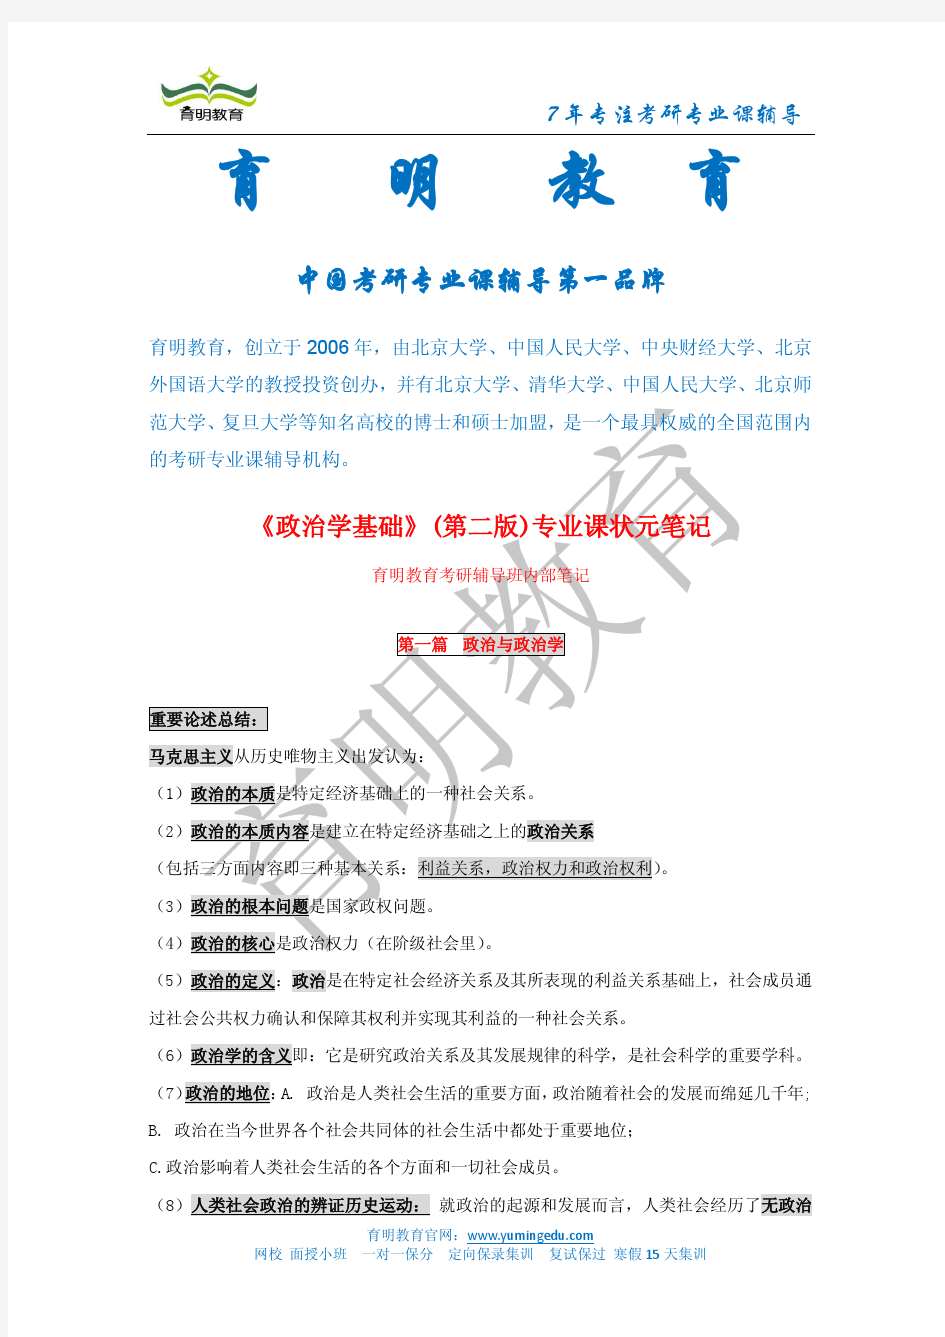 王浦劬 政治学基础 考研笔记 背诵版